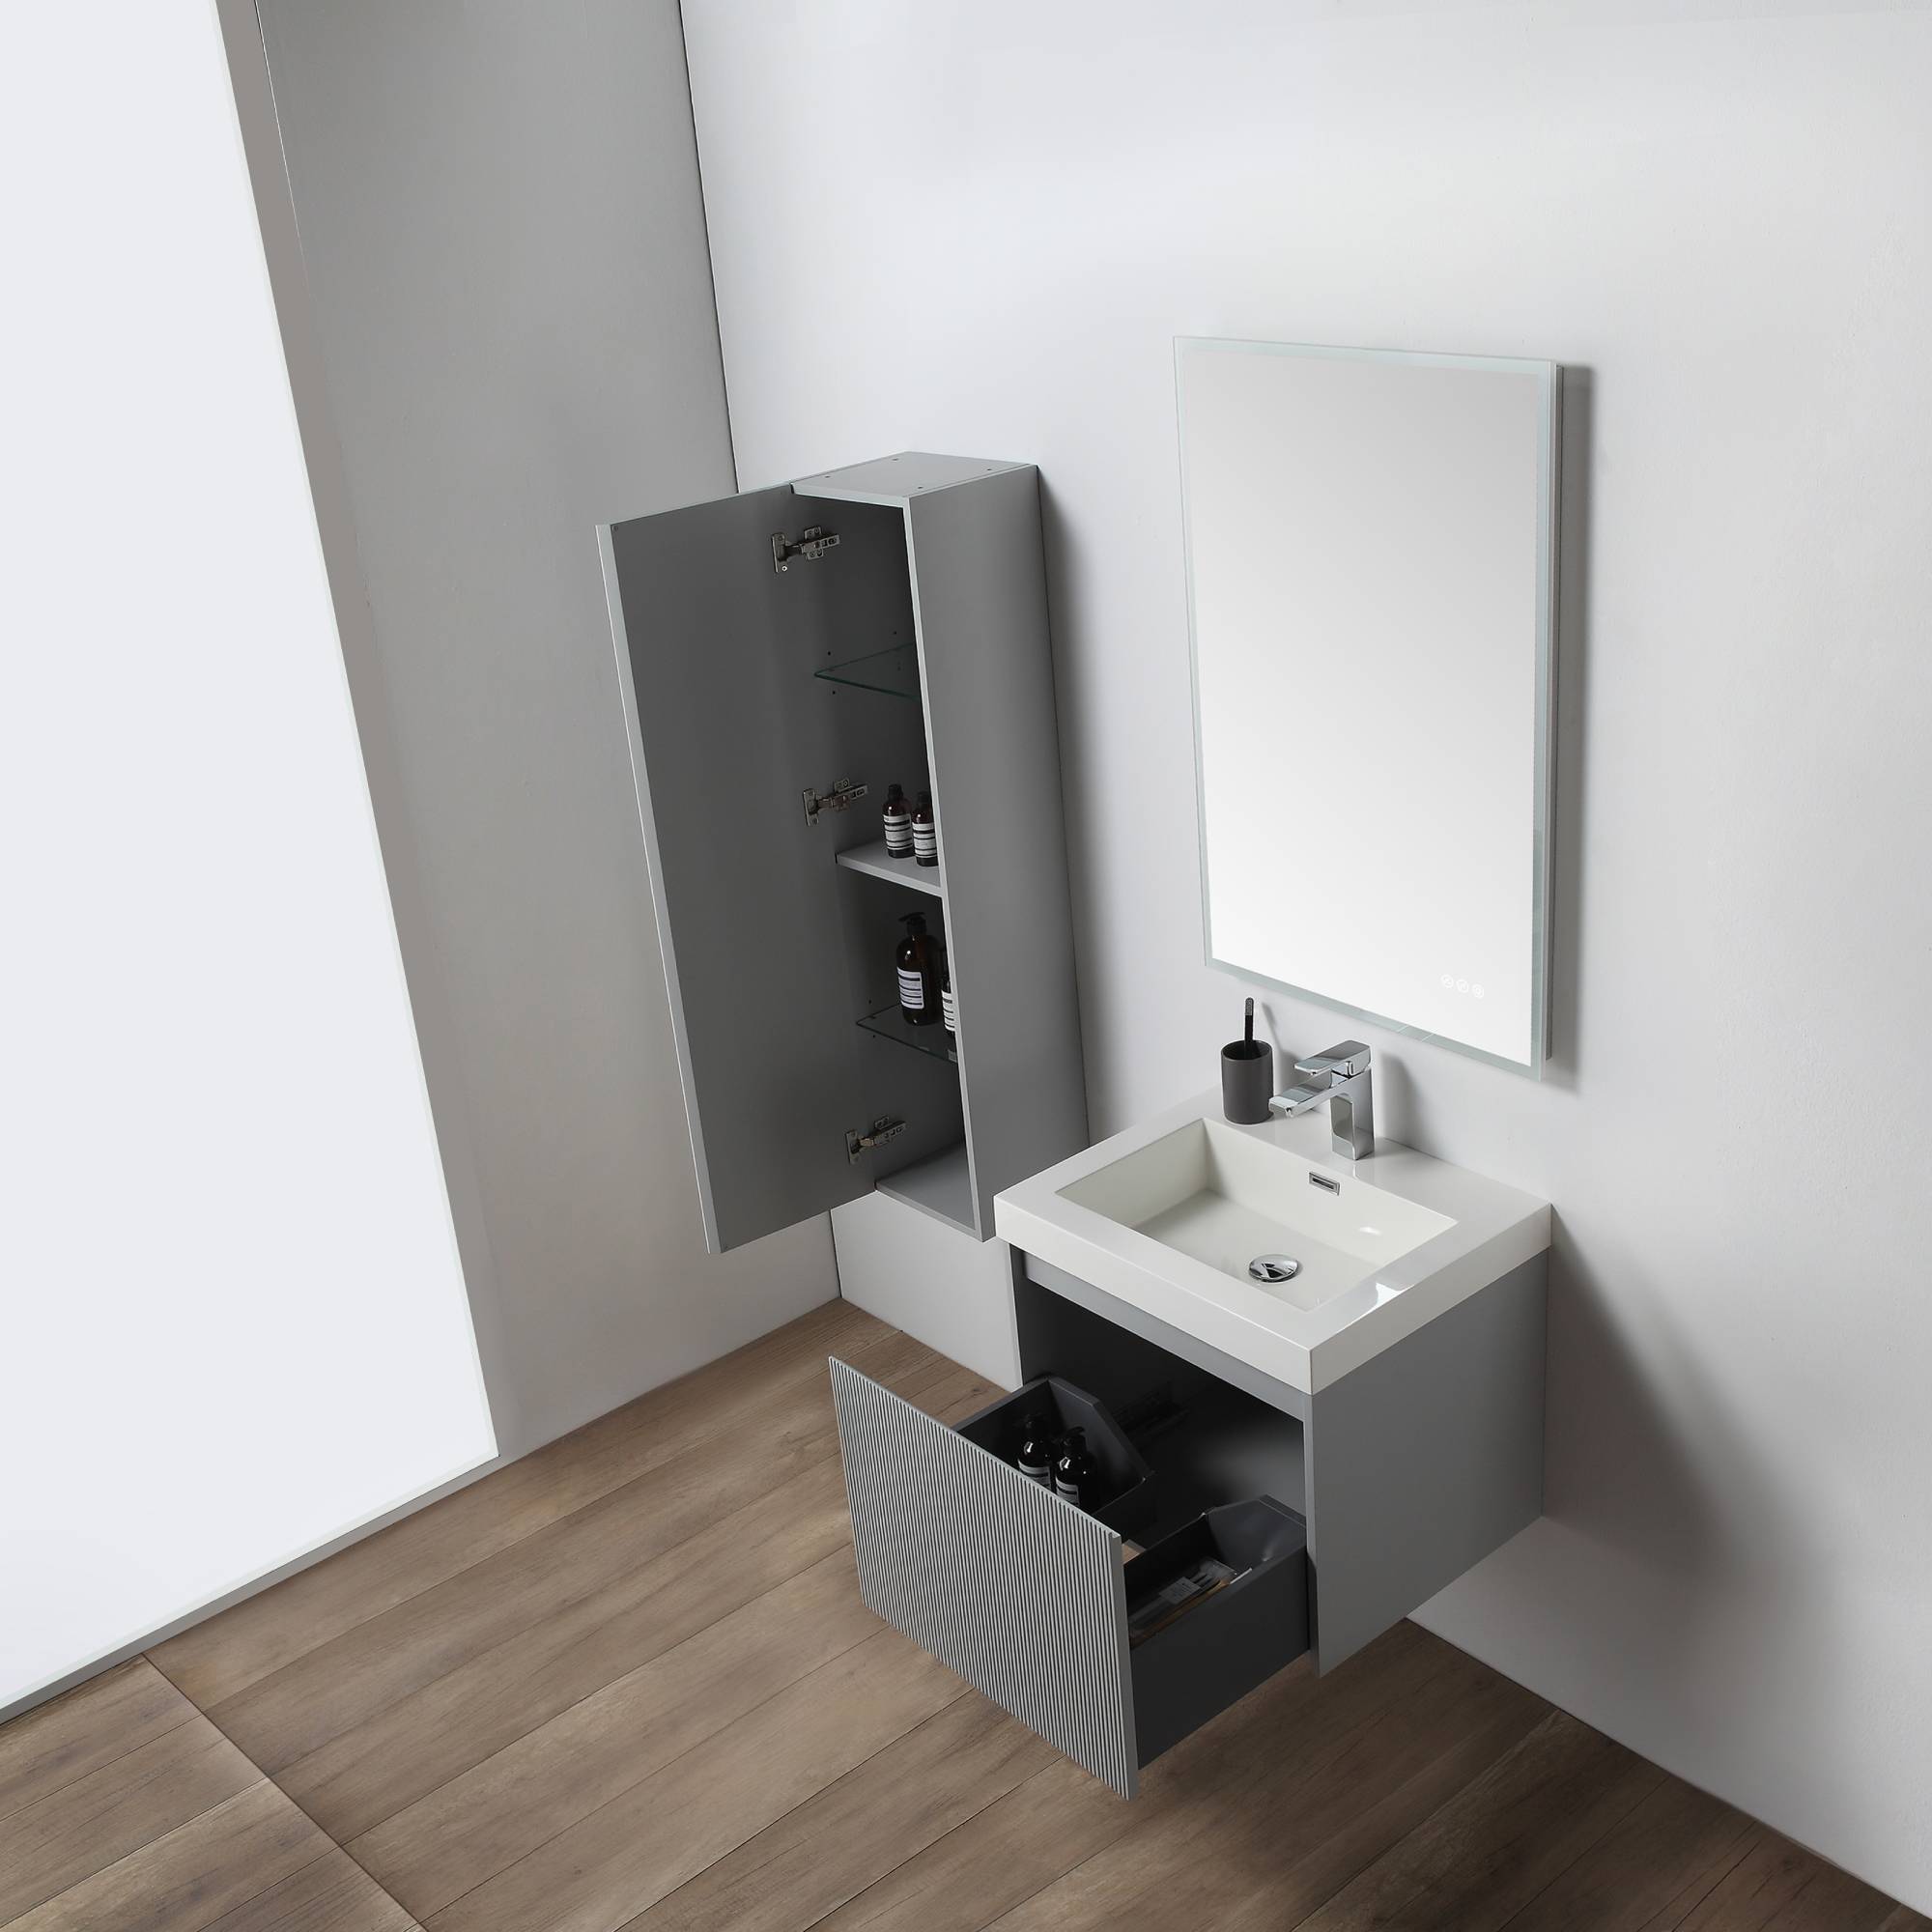 Positano 24" Bathroom Vanity  #size_24"  #color_light grey